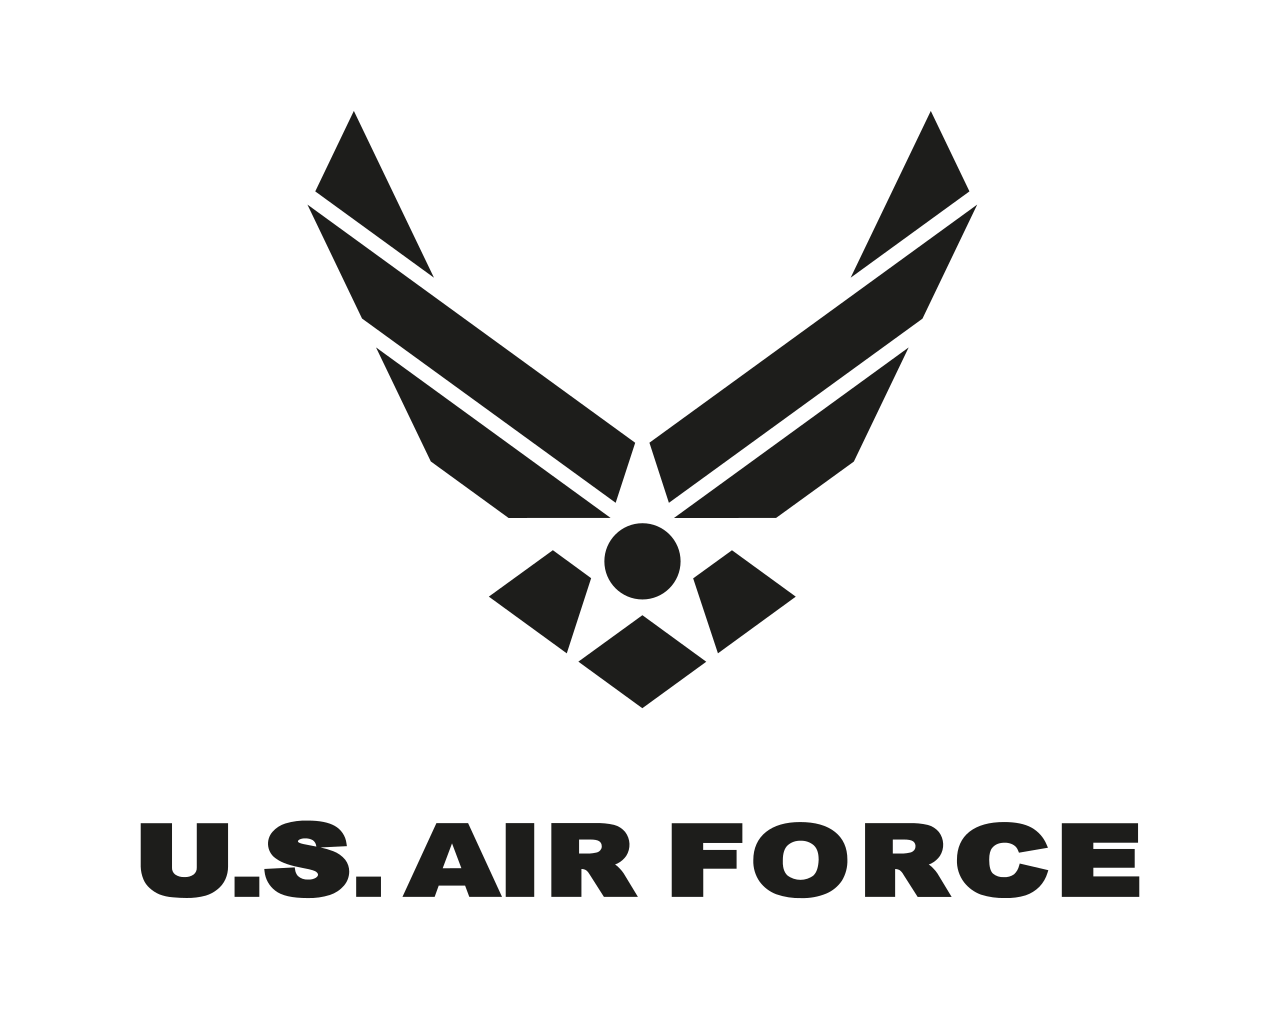 USAF-logo